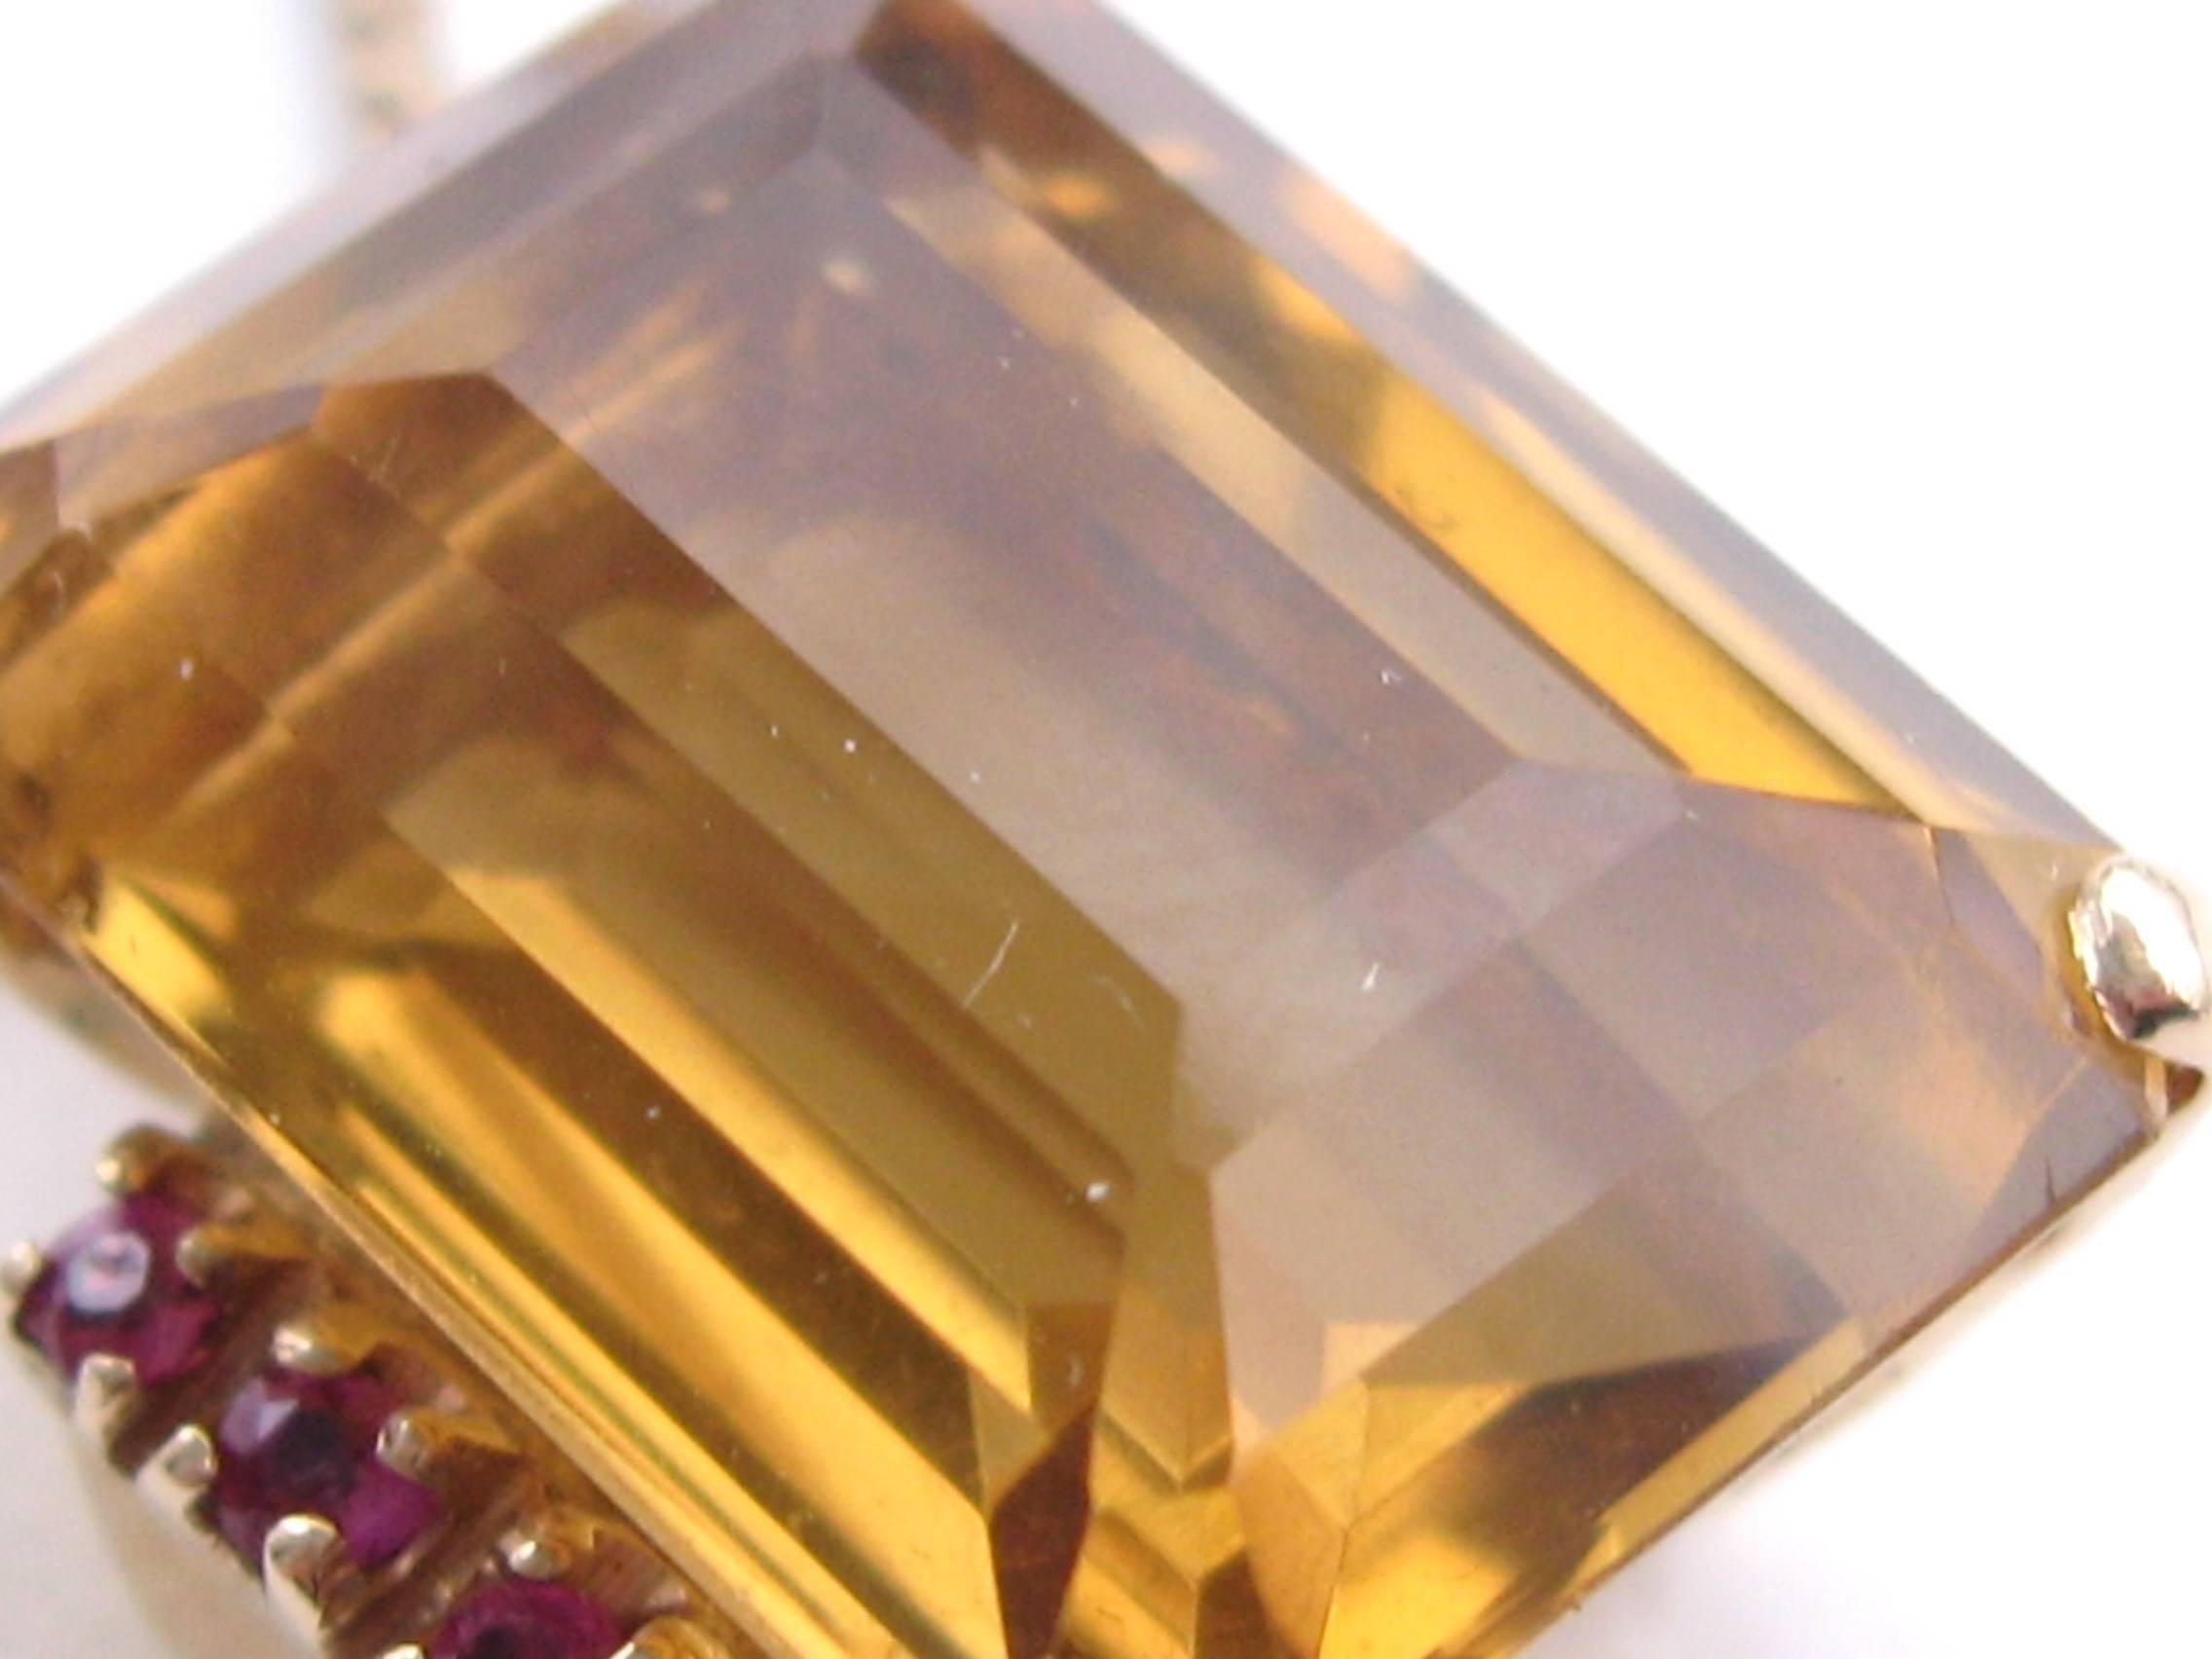 Atemberaubende Emerald Cut Golden Citrin Stein Anhänger in 14K Gold. Flankiert von 6 Rubinen. Auf einem 14K Gold Kette Messung 24 in lang, die Golden Citrin Maßnahmen 18,05 x 13,28 x 9,16 + ca. 14,75 Karat.  Schauen Sie auf jeden Fall in unserem